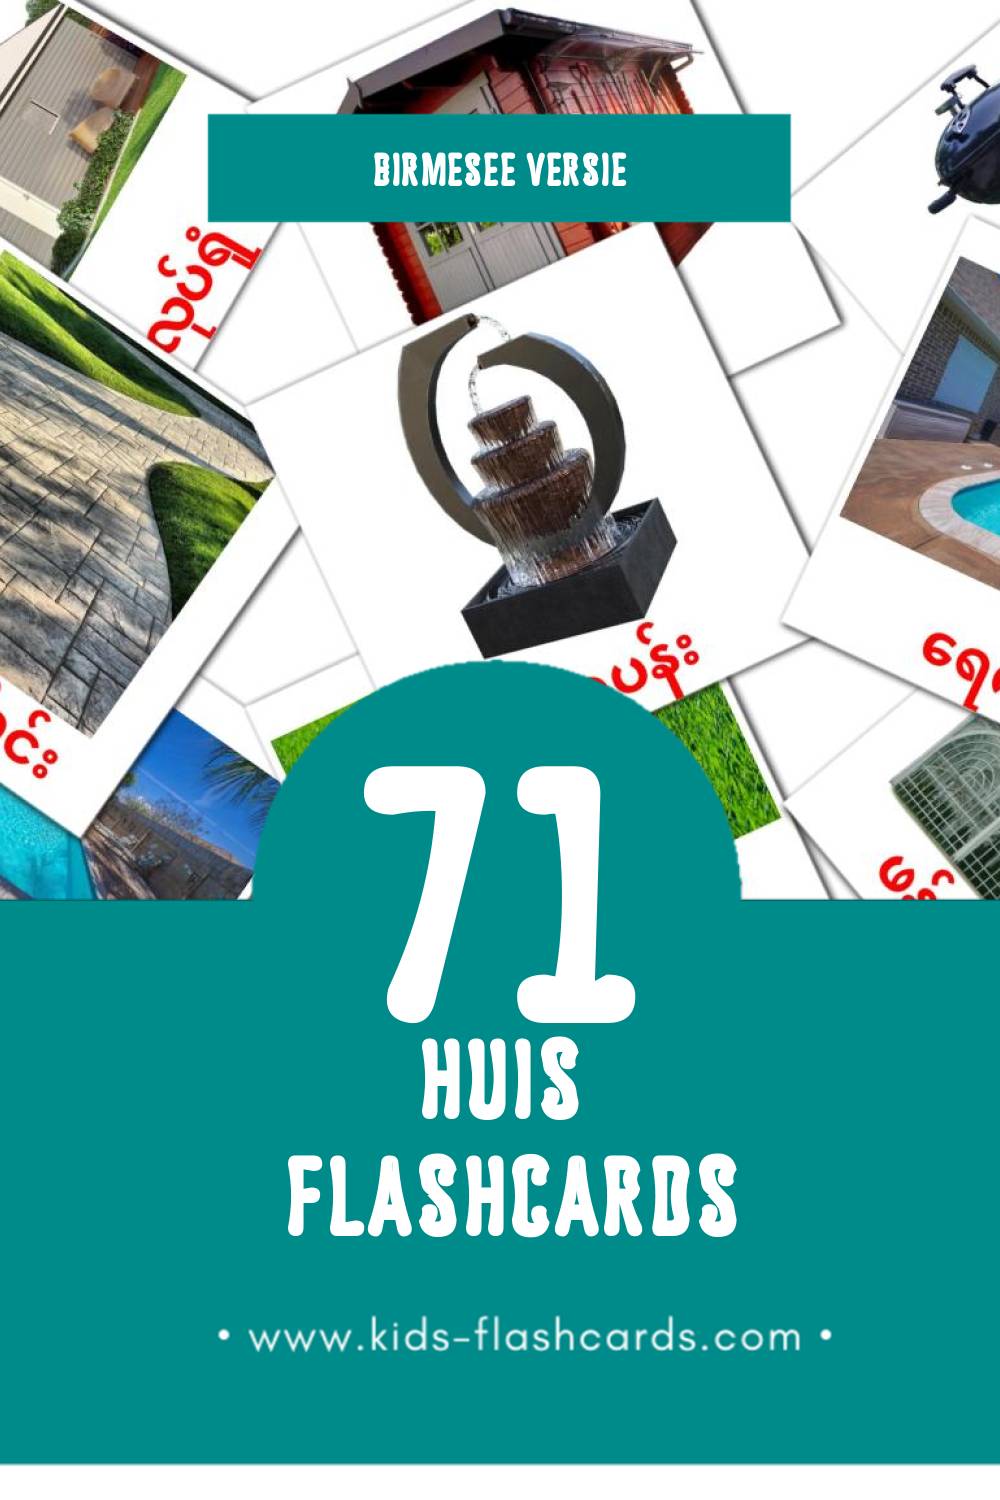 Visuele အိမ် Flashcards voor Kleuters (71 kaarten in het Birmese)